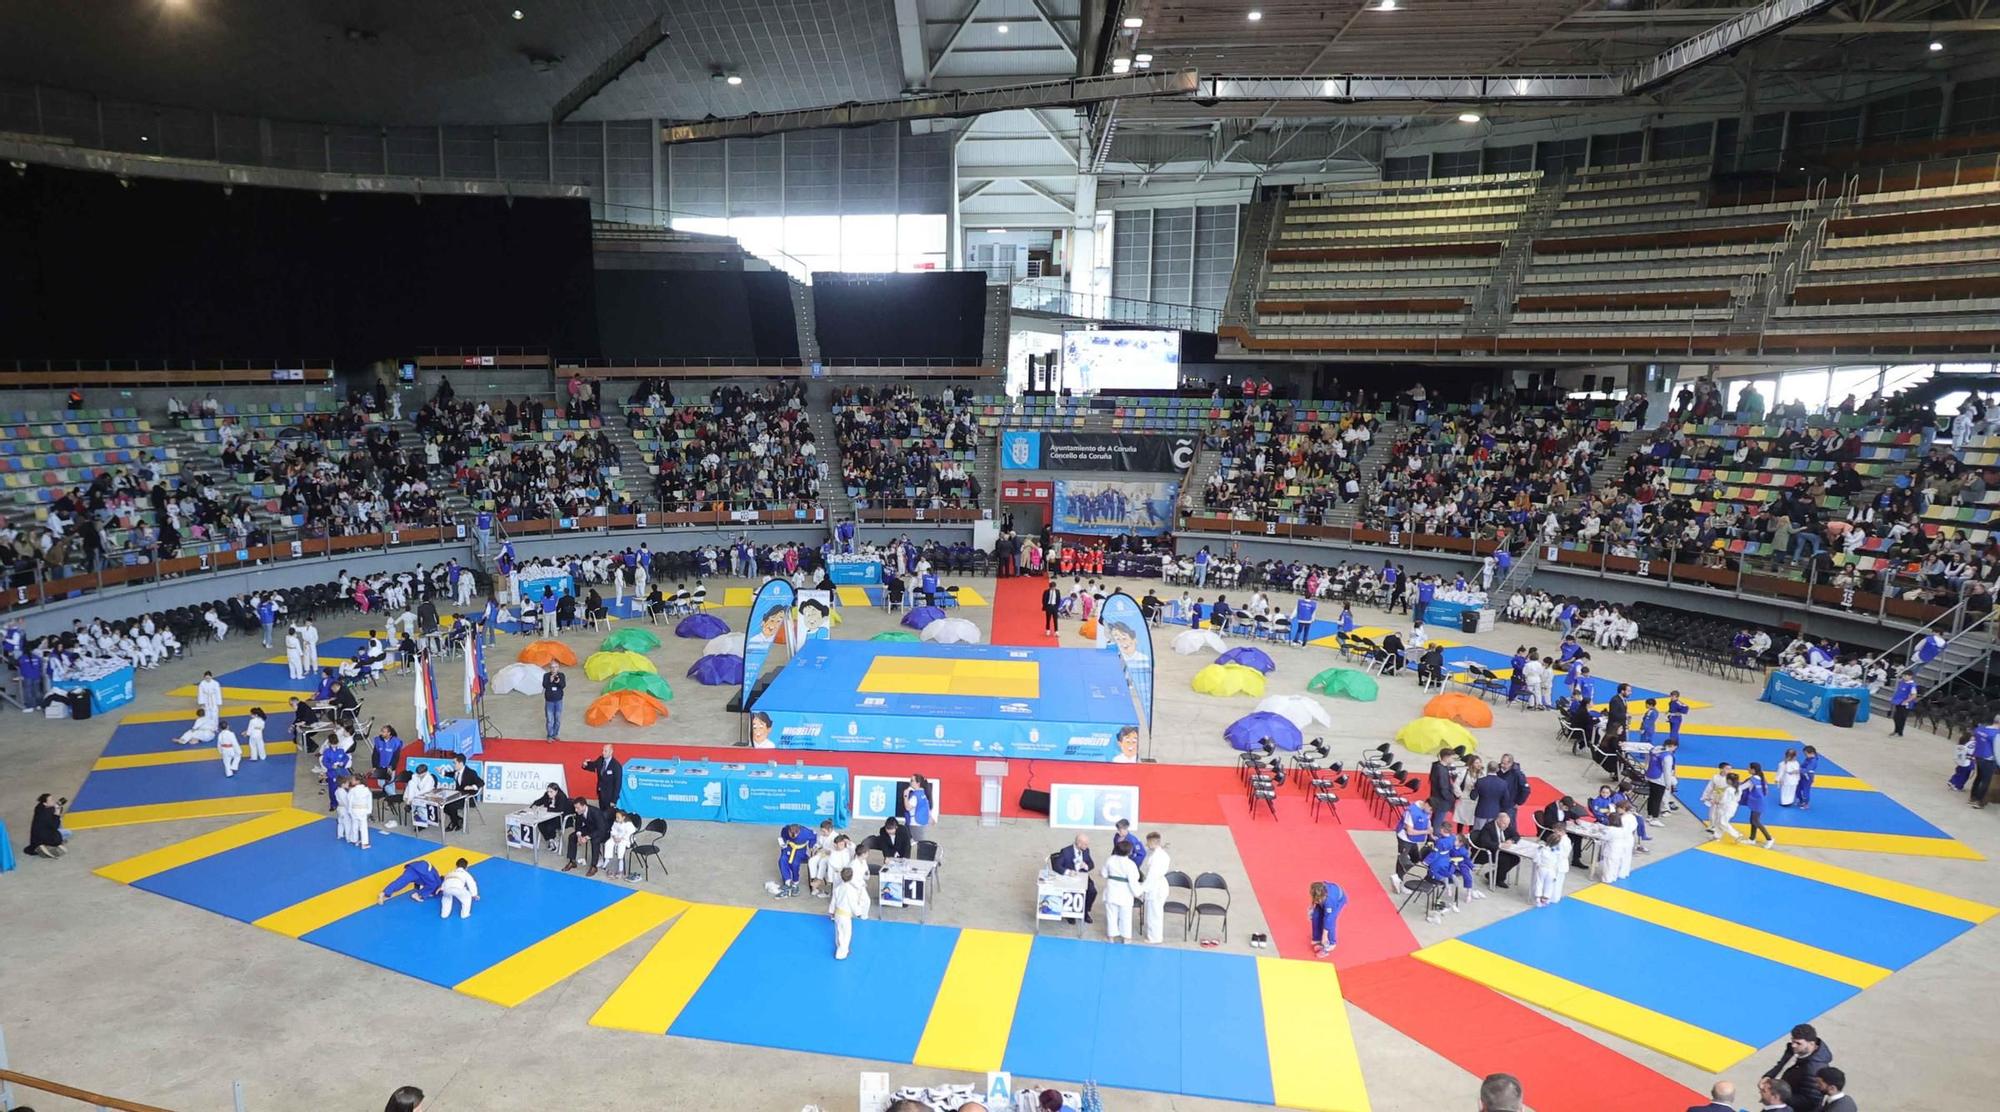 Tres mil judokas llenan el Coliseum por el Miguelito